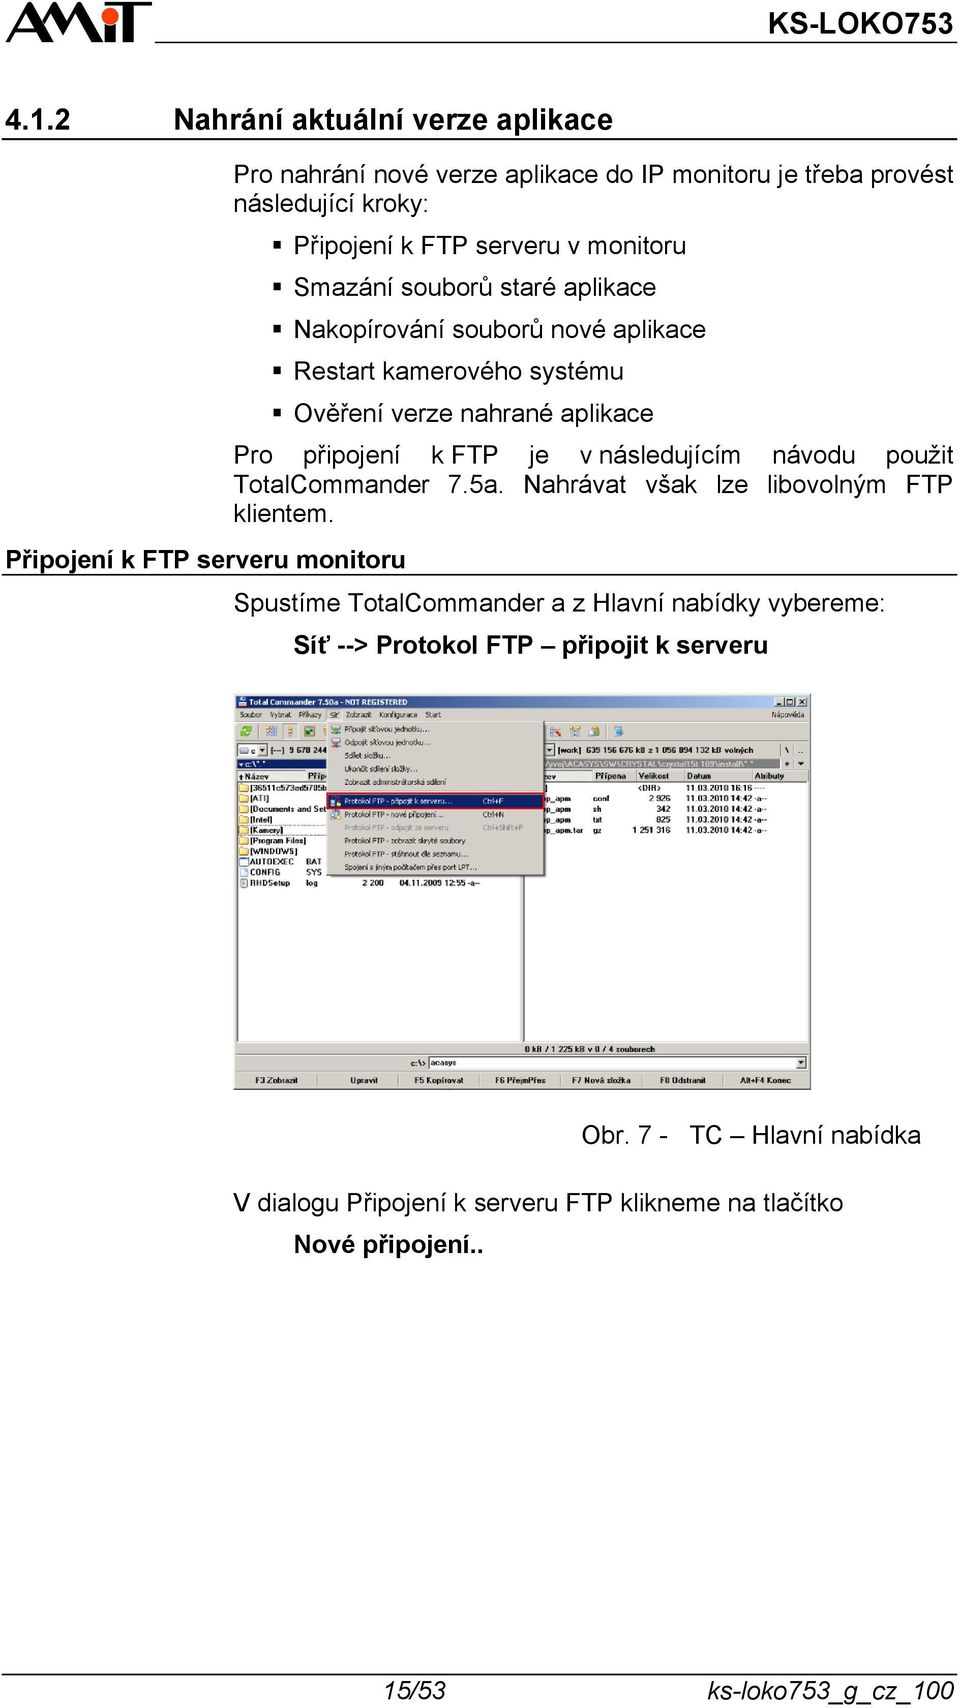 Pro připojení k FTP je v následujícím návodu použit TotalCommander 7.5a. Nahrávat však lze libovolným FTP klientem.